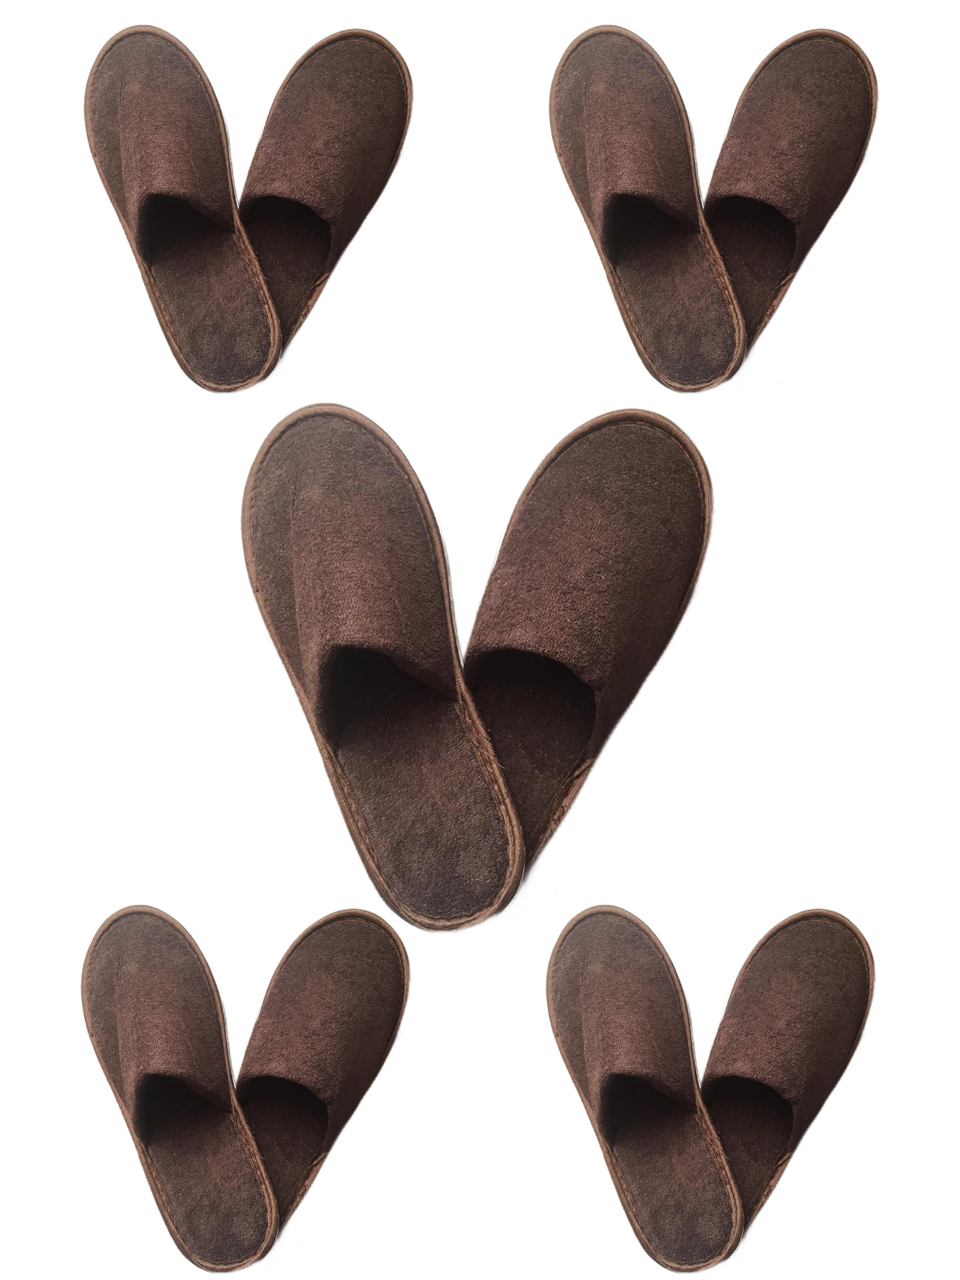 фото Домашние тапочки мужские полокрон 12715-5 коричневые 41-44 ru 5 пар